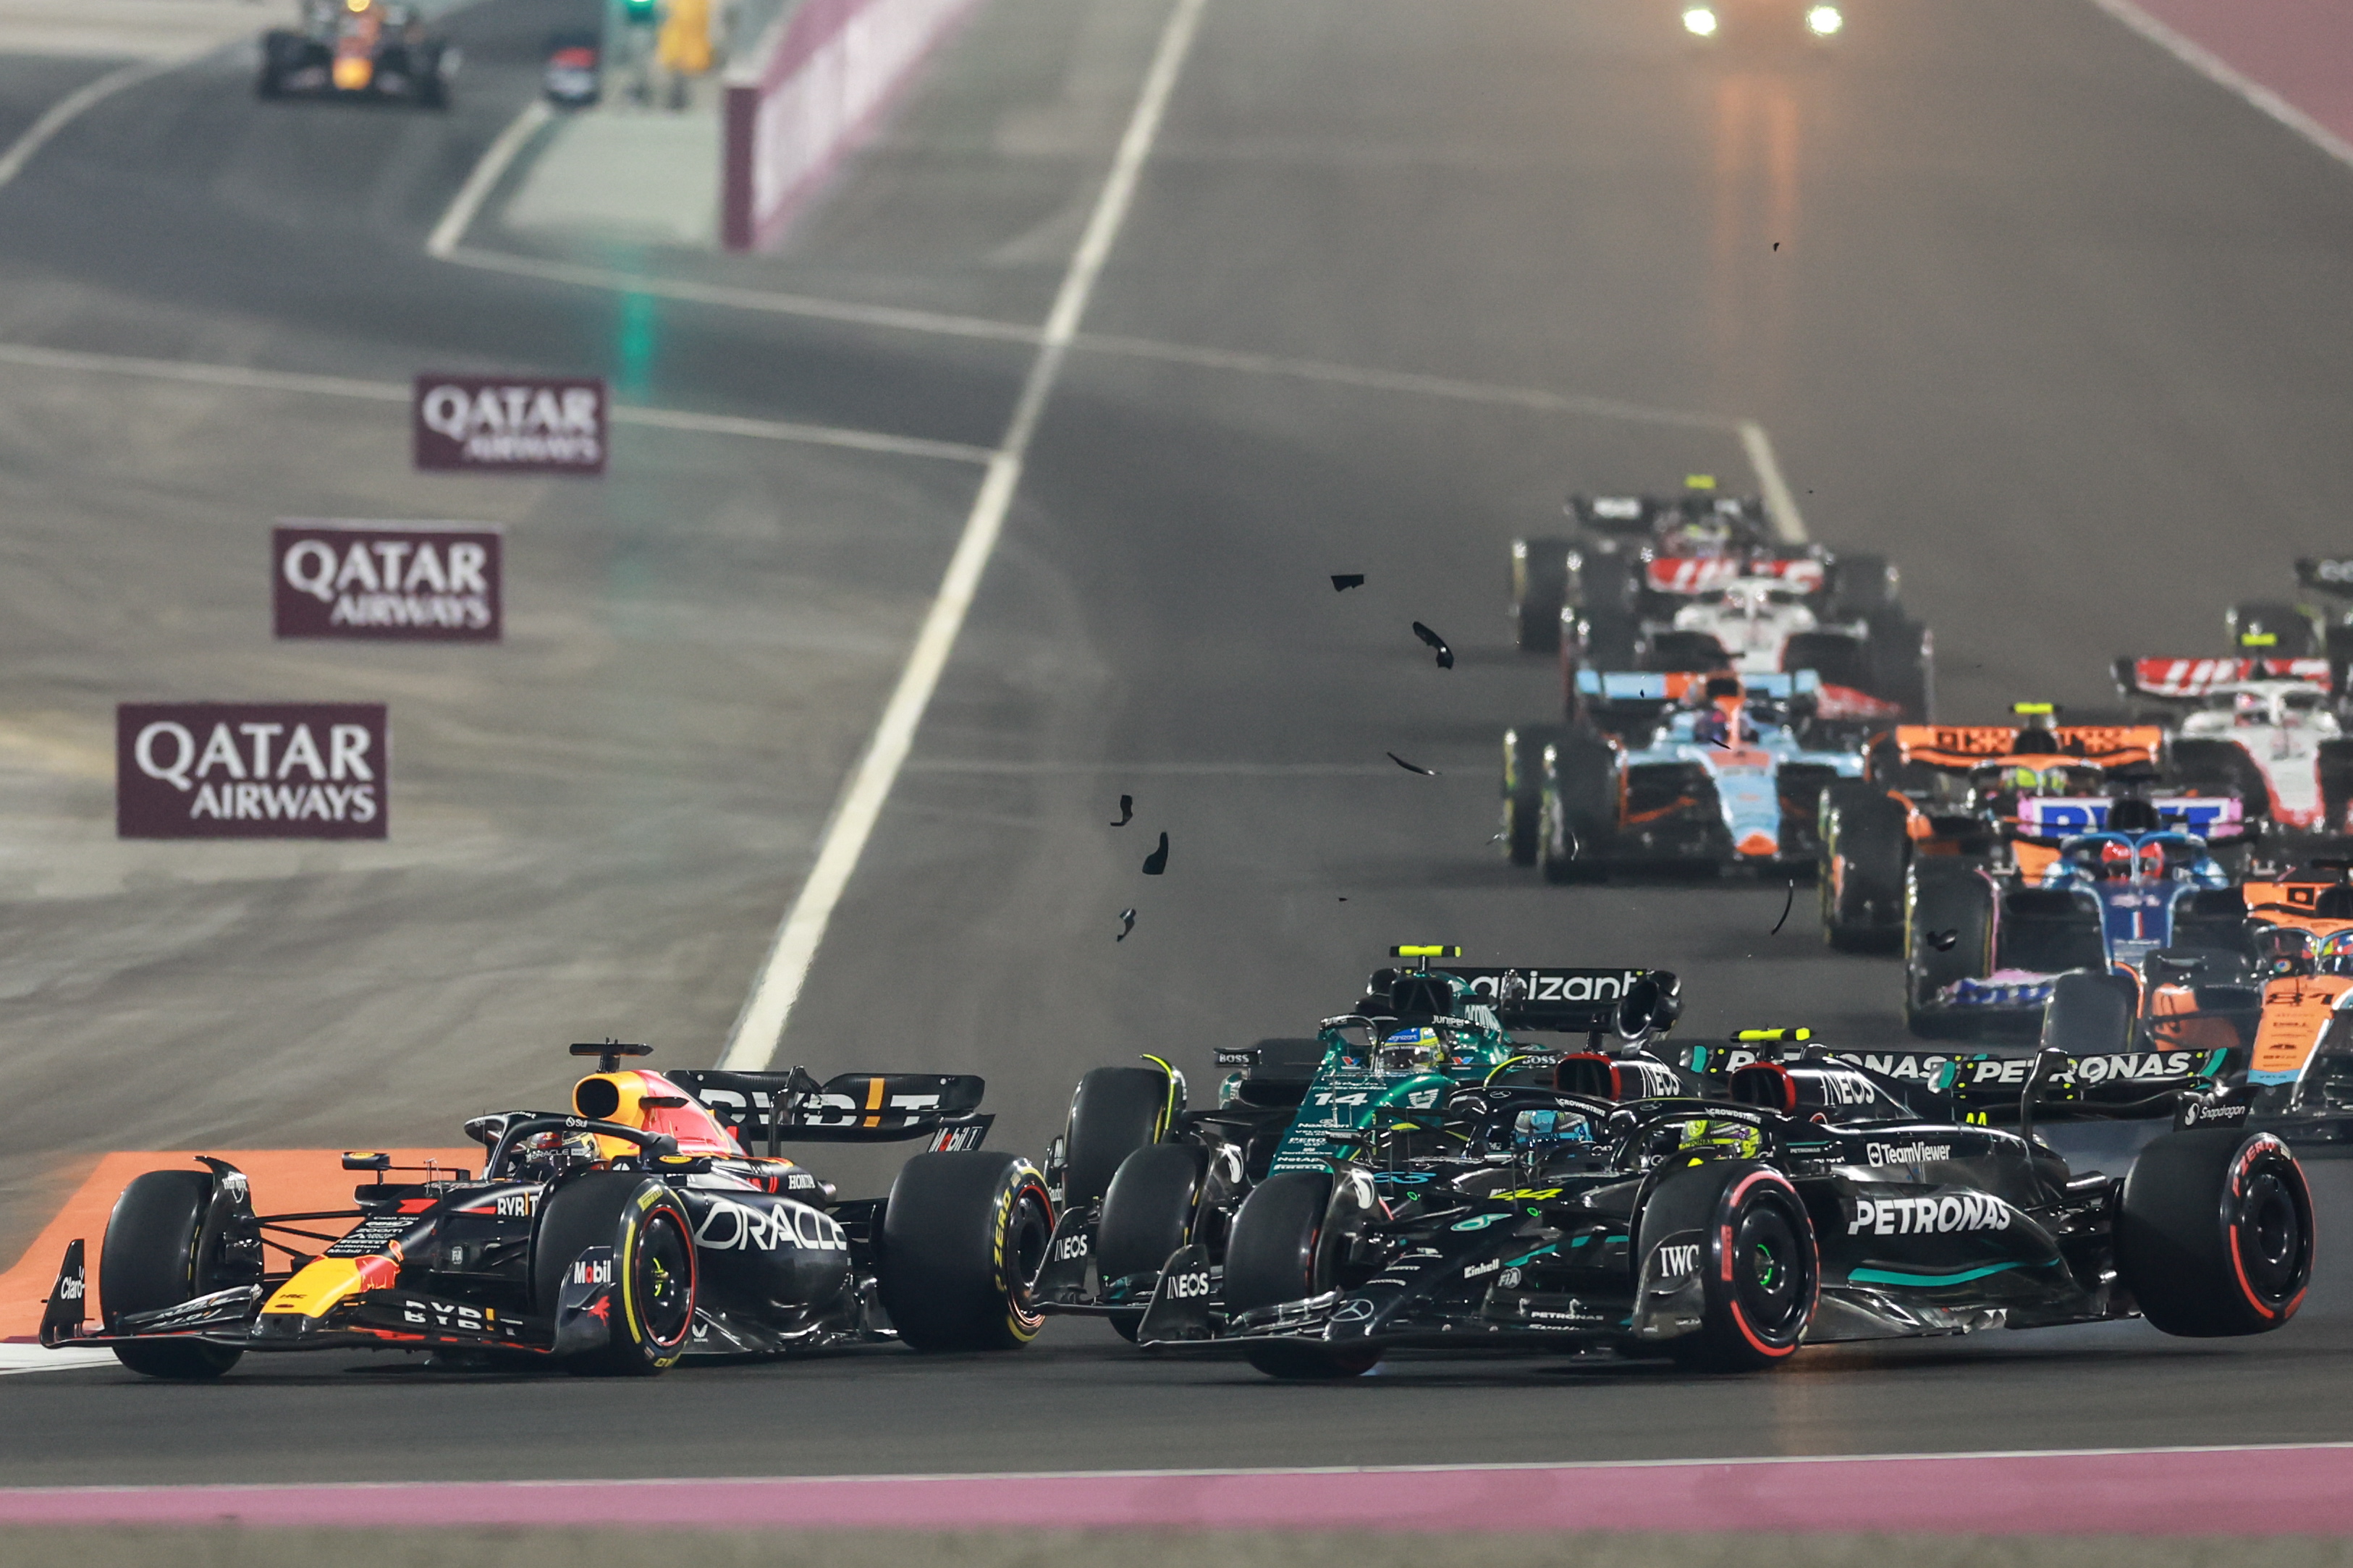 Los pilotos de Mercedes-AMG Petronas, George Russell y Lewis Hamilton se estrellan cerca de Max Verstappen de Red Bull Racing. (Foto Prensa Libre: EFE)